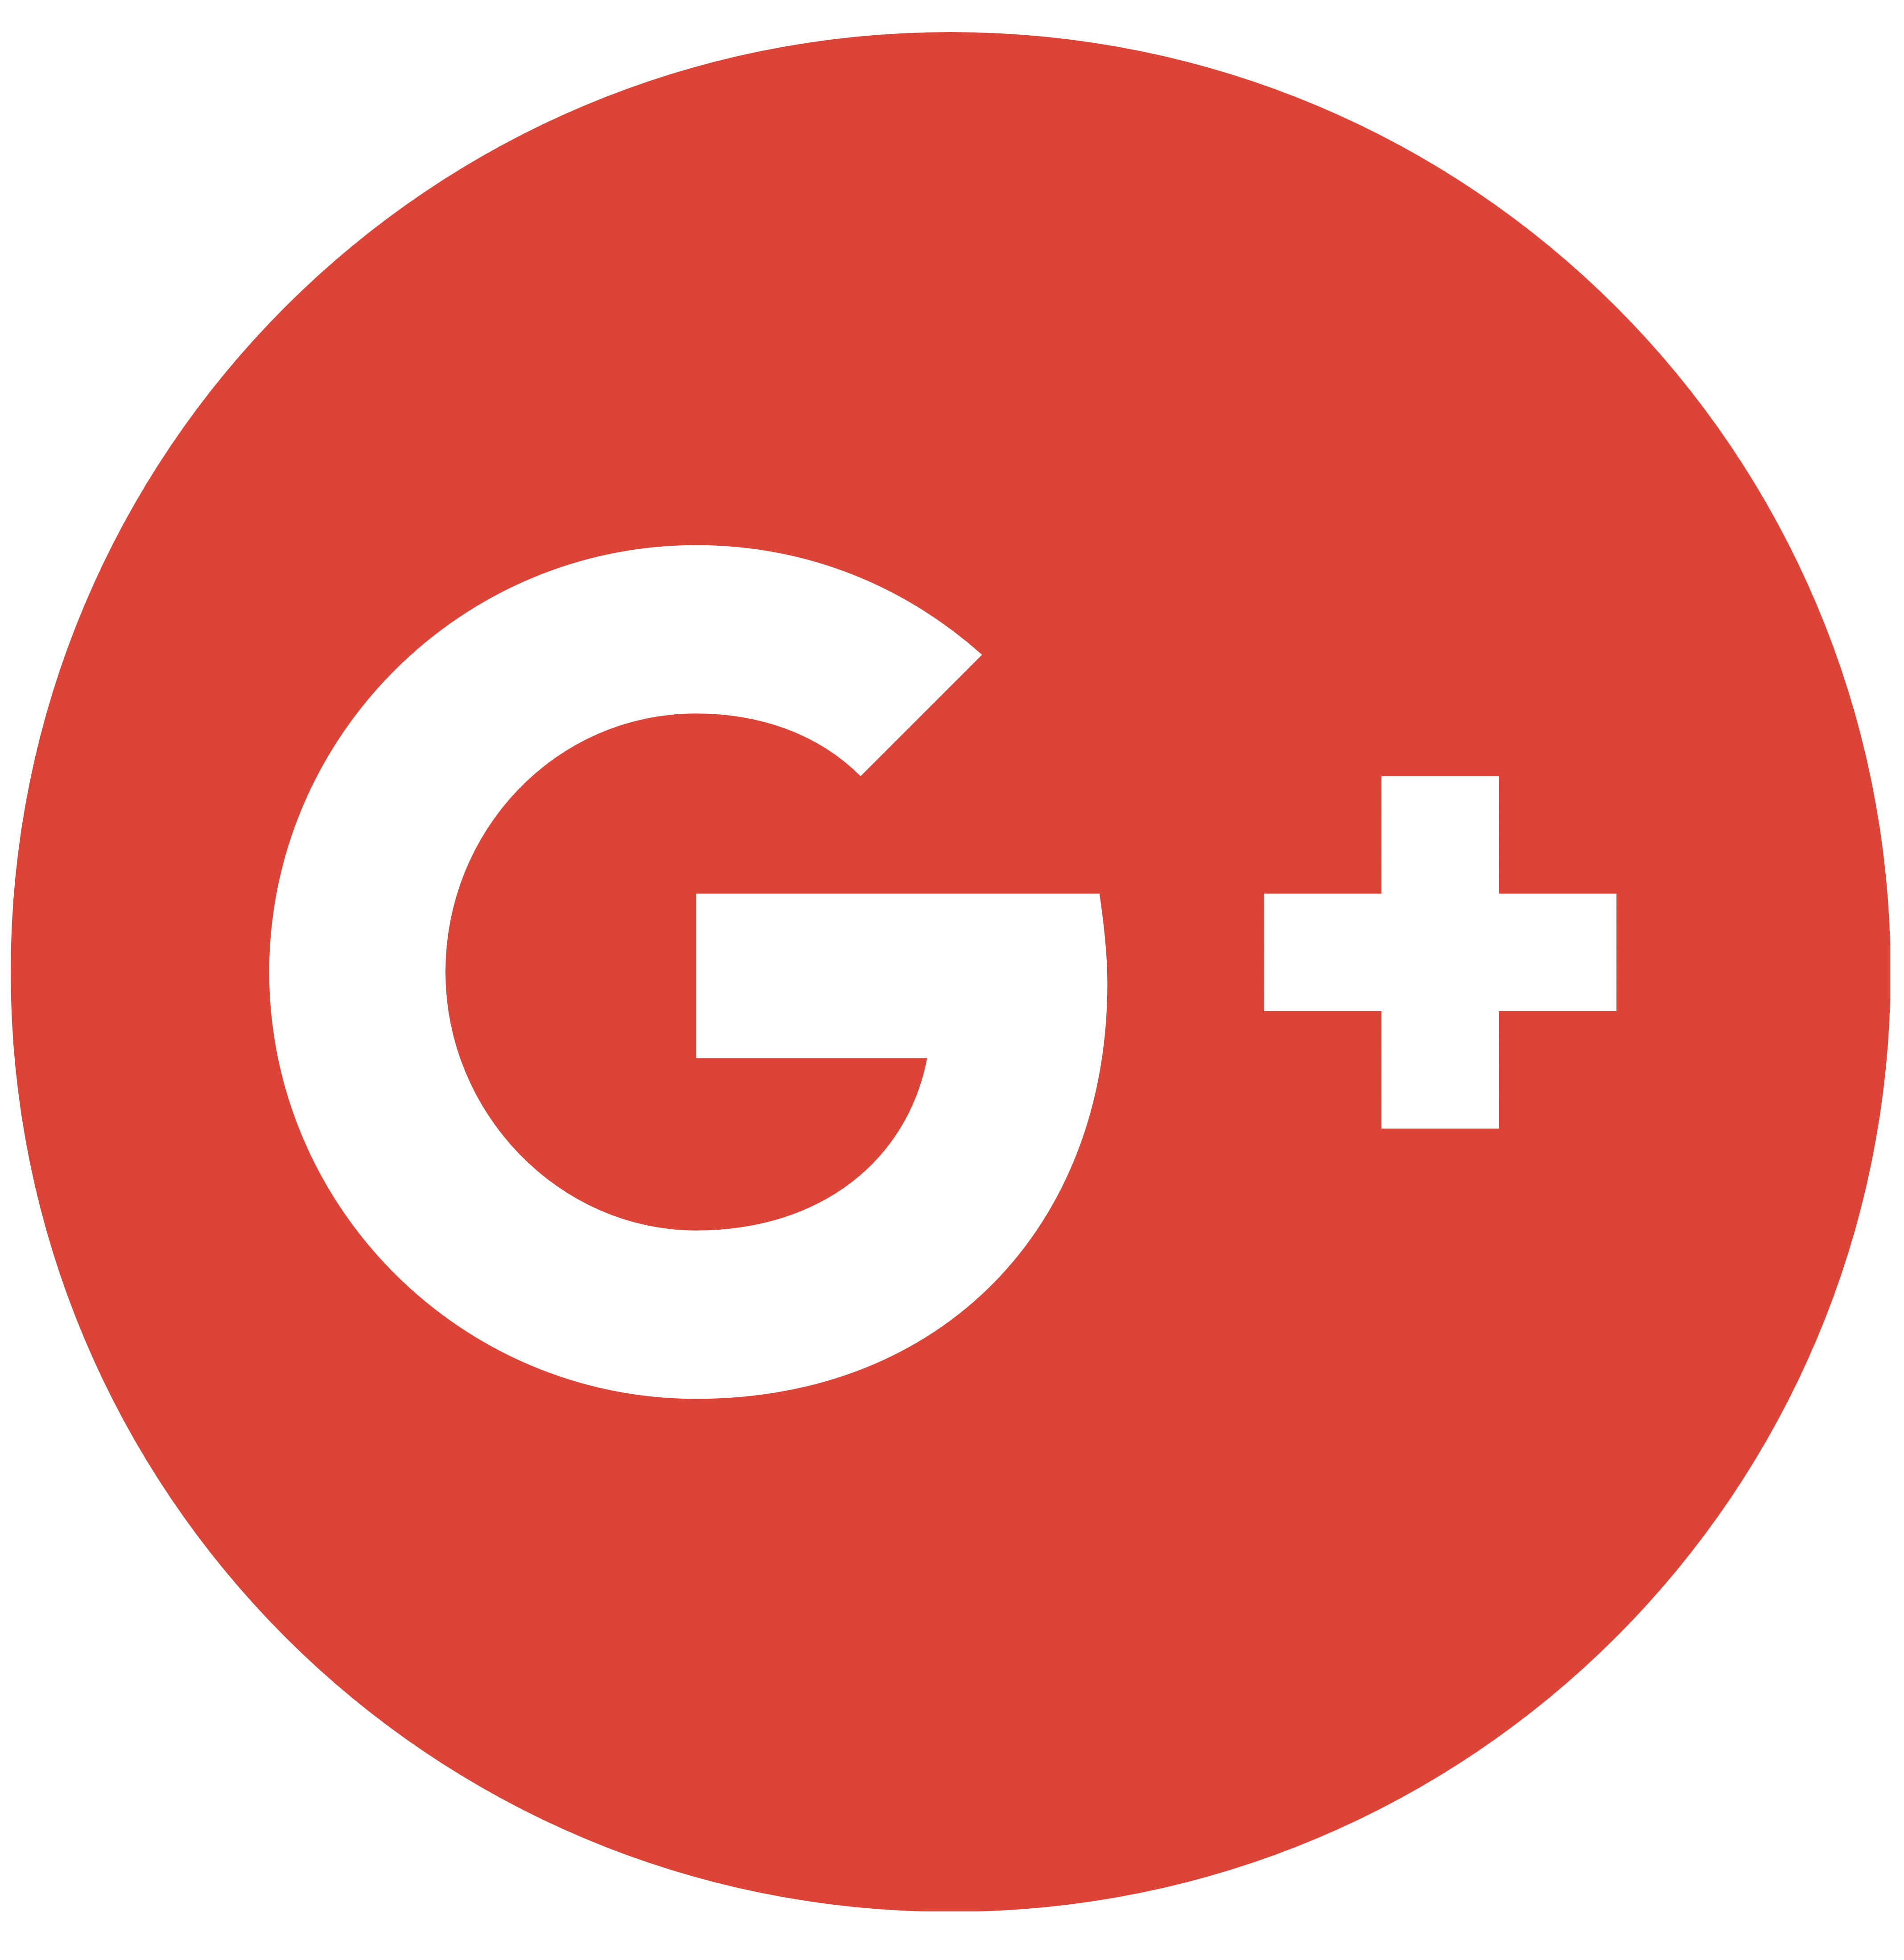 Google Plus logo, logotype